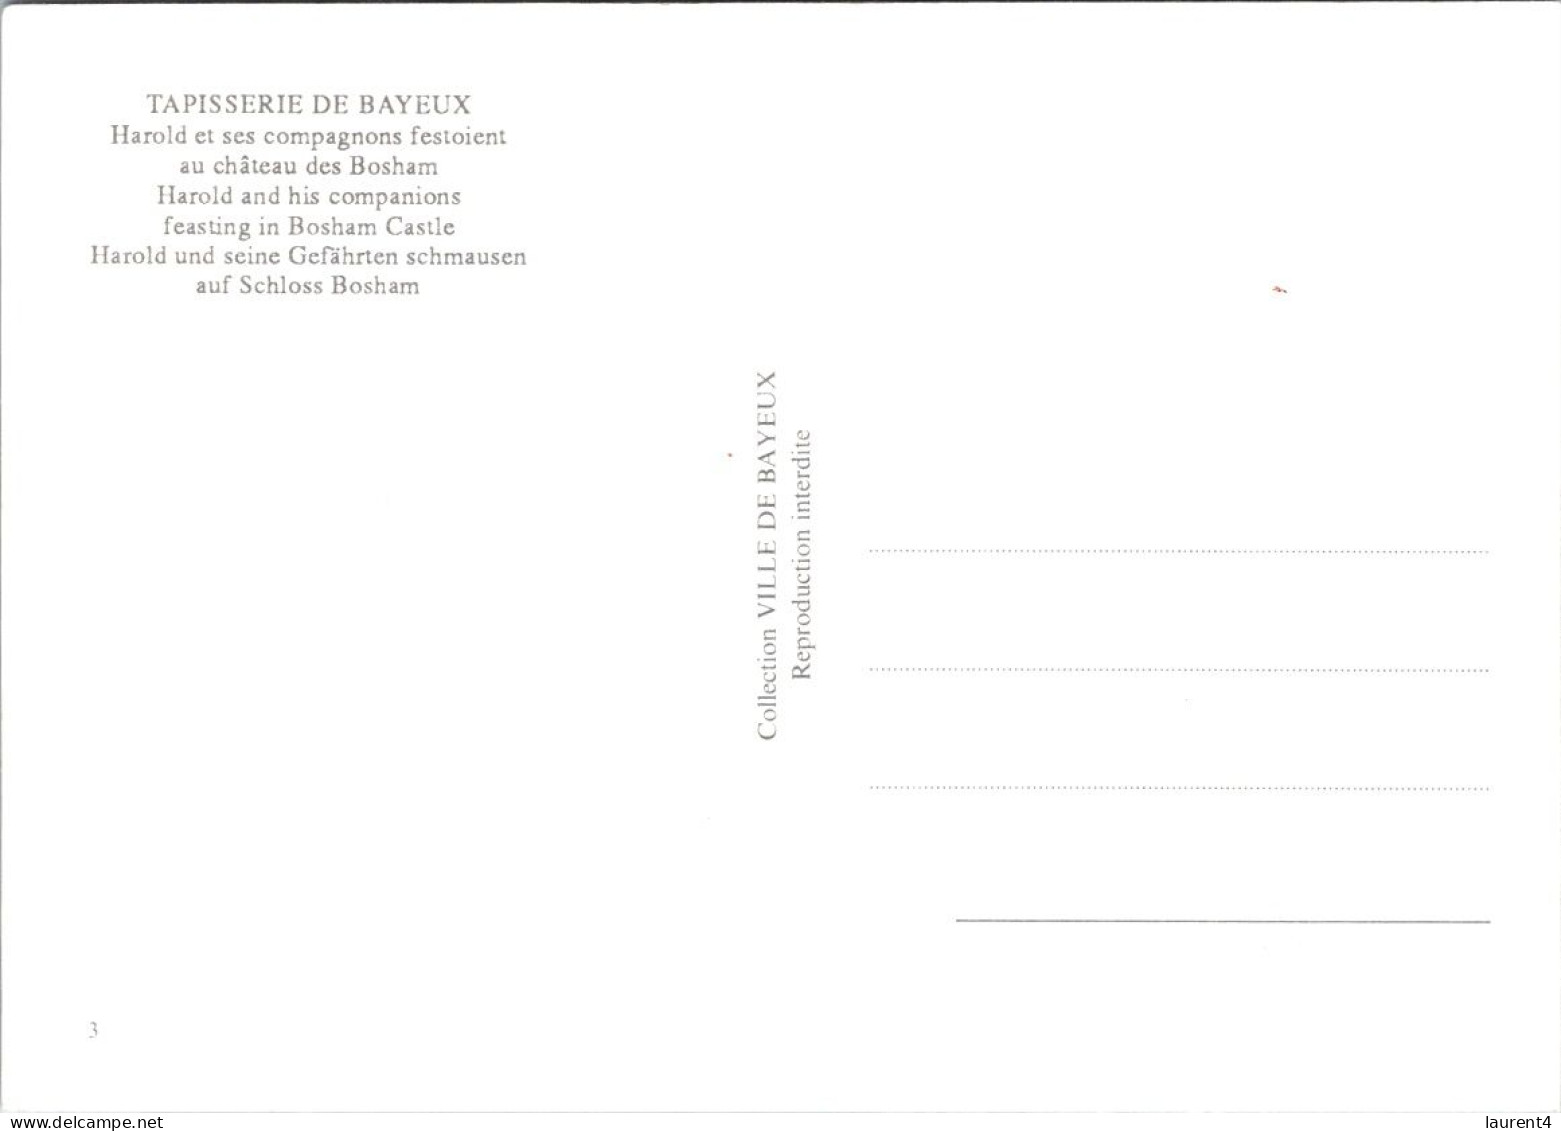 12-4-2024 (1 Z 43) France - Tapisserie De Bayeux (2 Postcards) - Kunstvoorwerpen